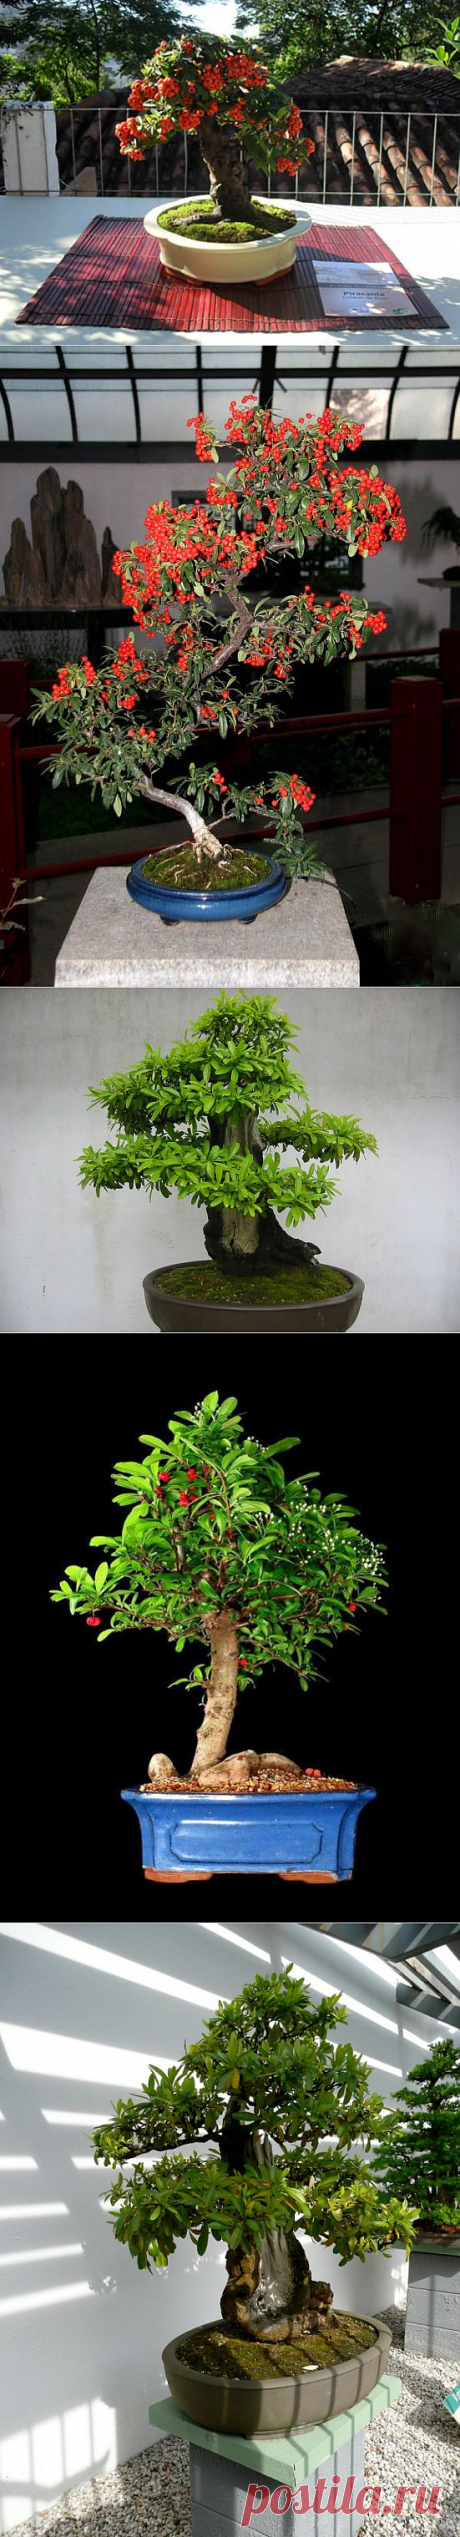 Удивительное растение пираканта, или огненный шип.